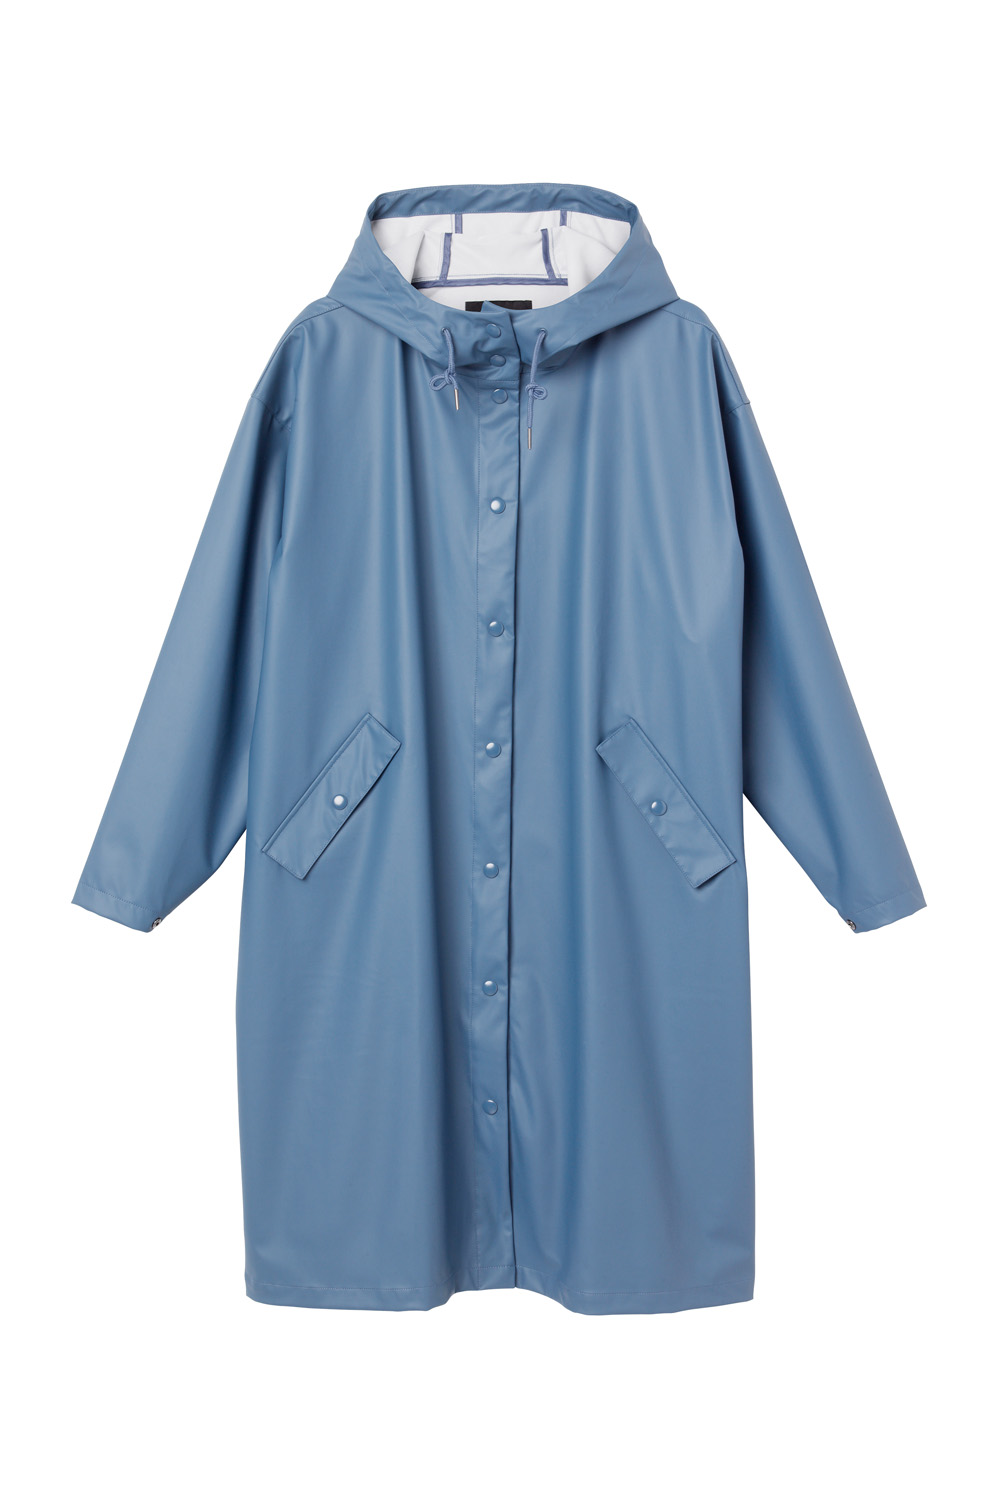 Yvonne raincoat, disponible chez Monki, 55€